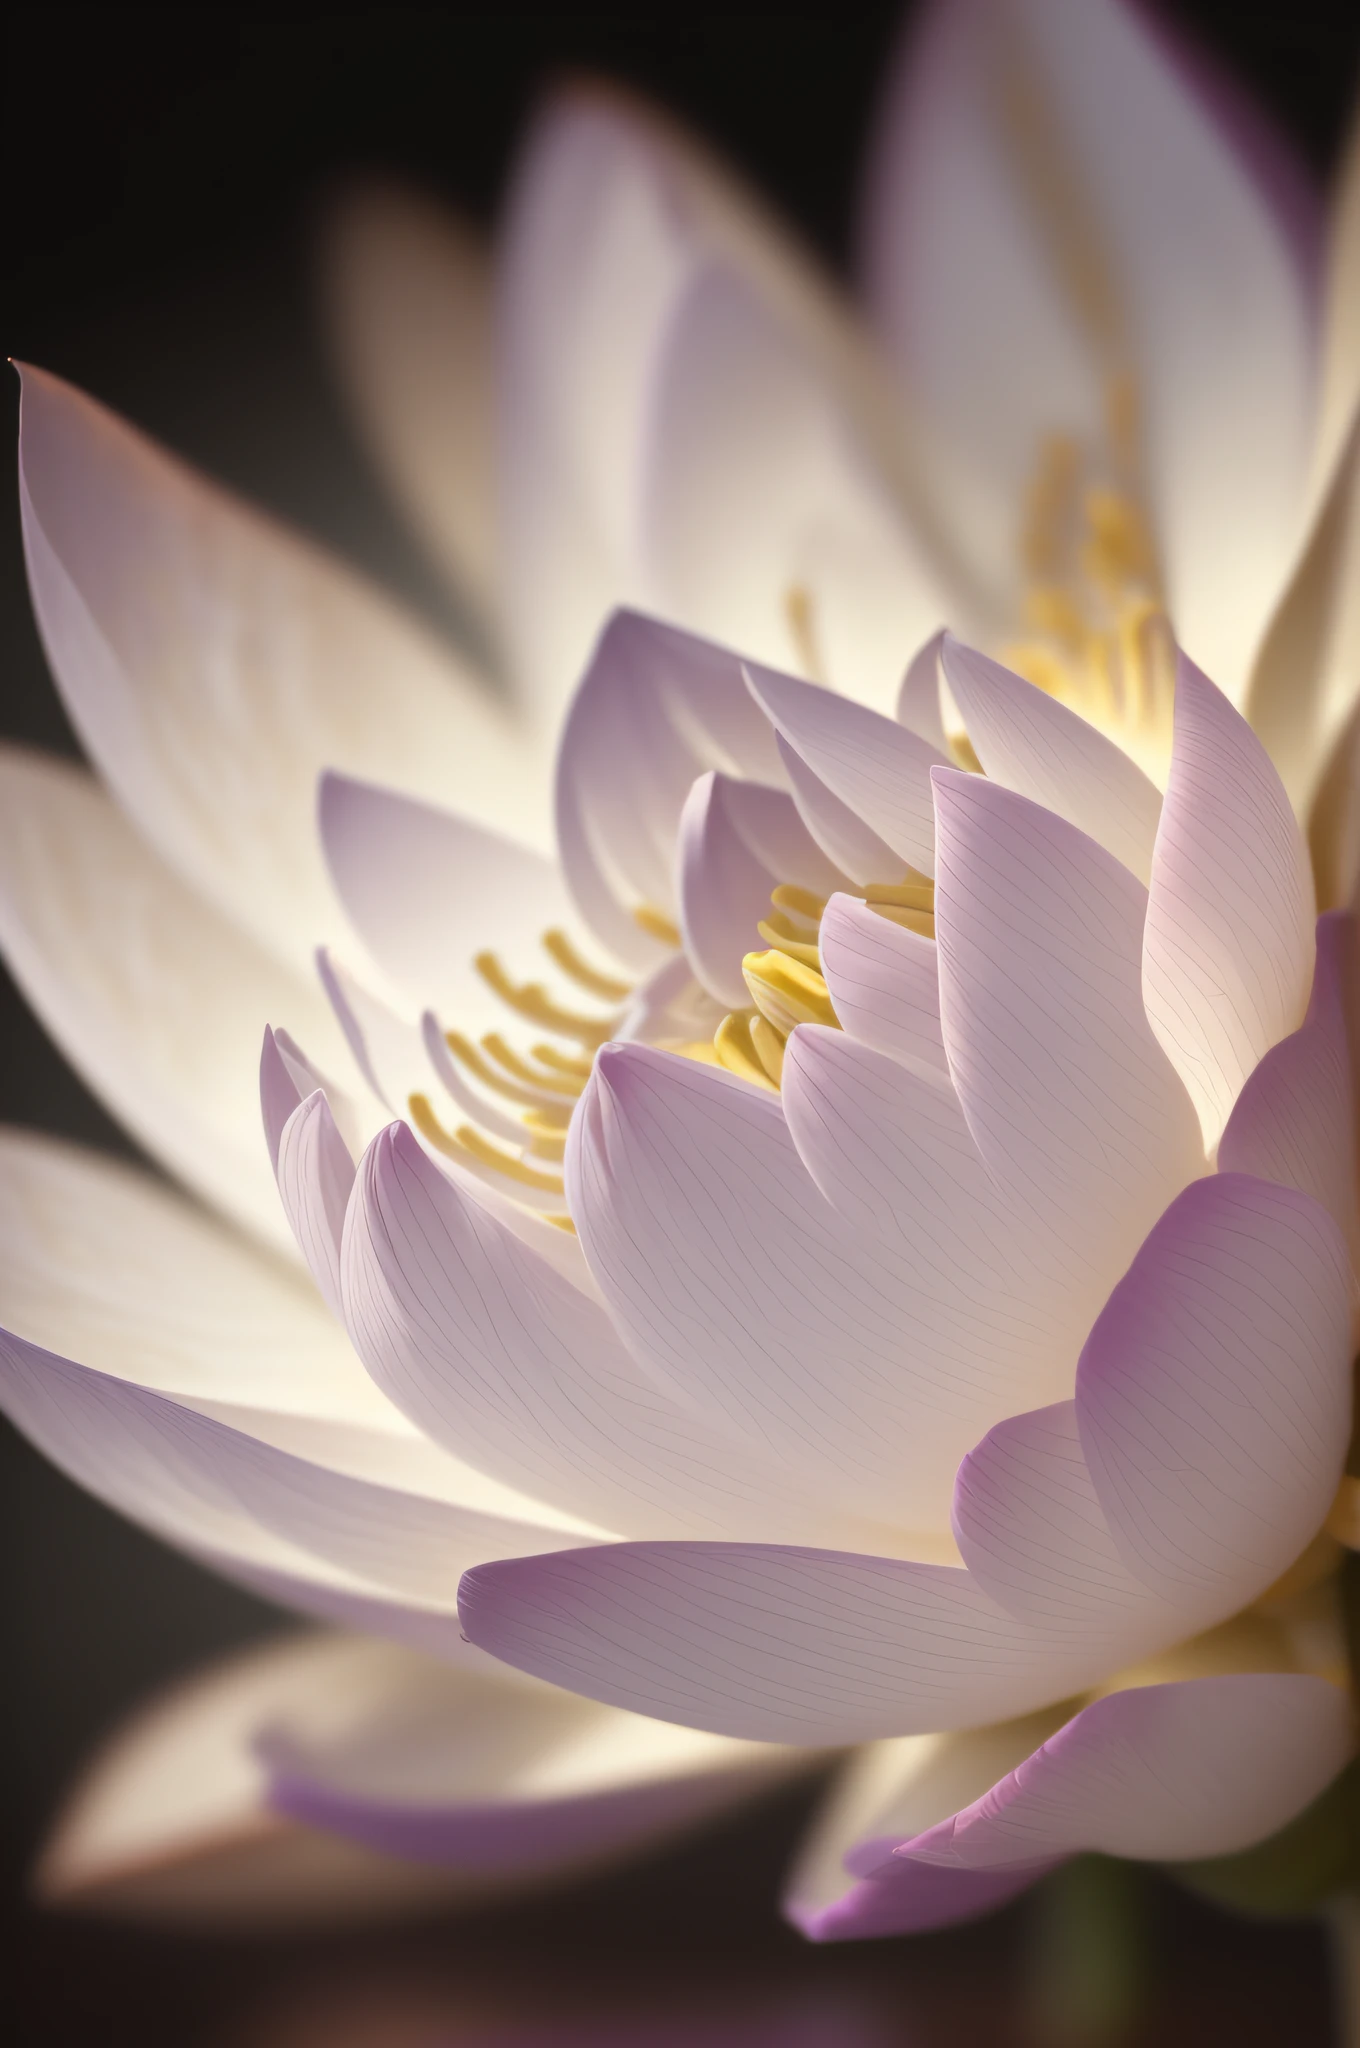 Inspirado na macrofotografia de Levon Biss, crie um close-up detalhado de uma flor de lótus --auto --s2